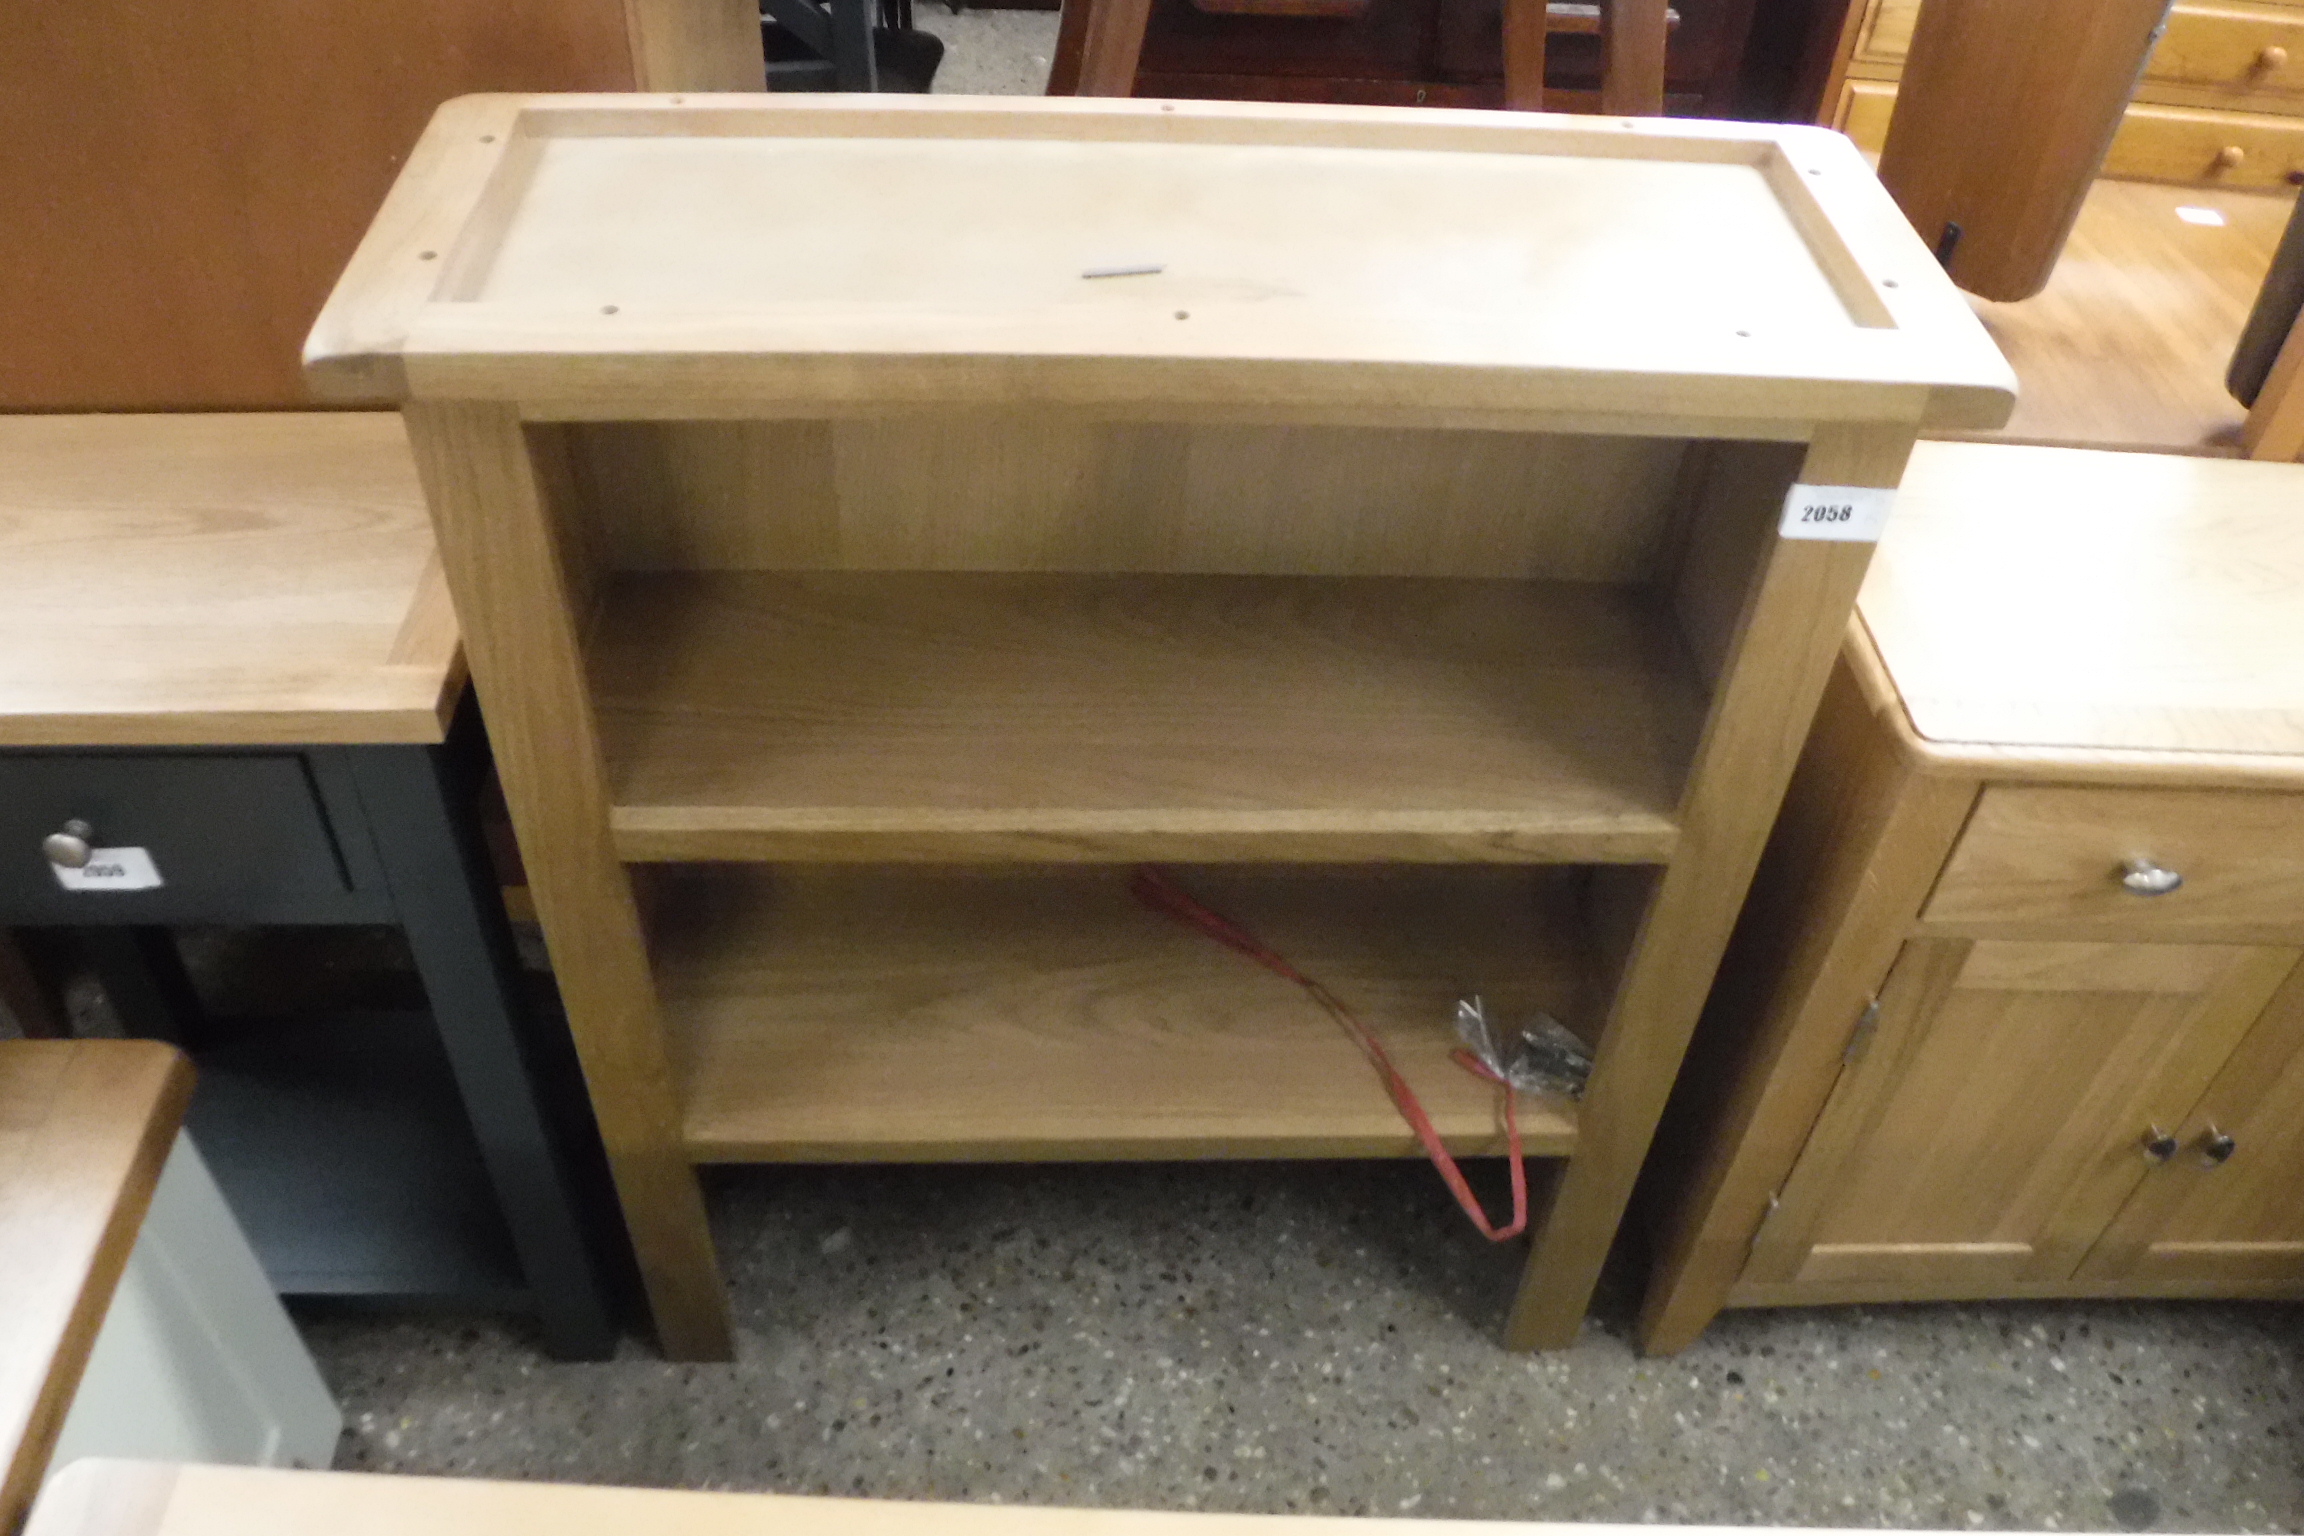 (88) Oak open front bookcase/ dresser top 85cm wide (B,19)